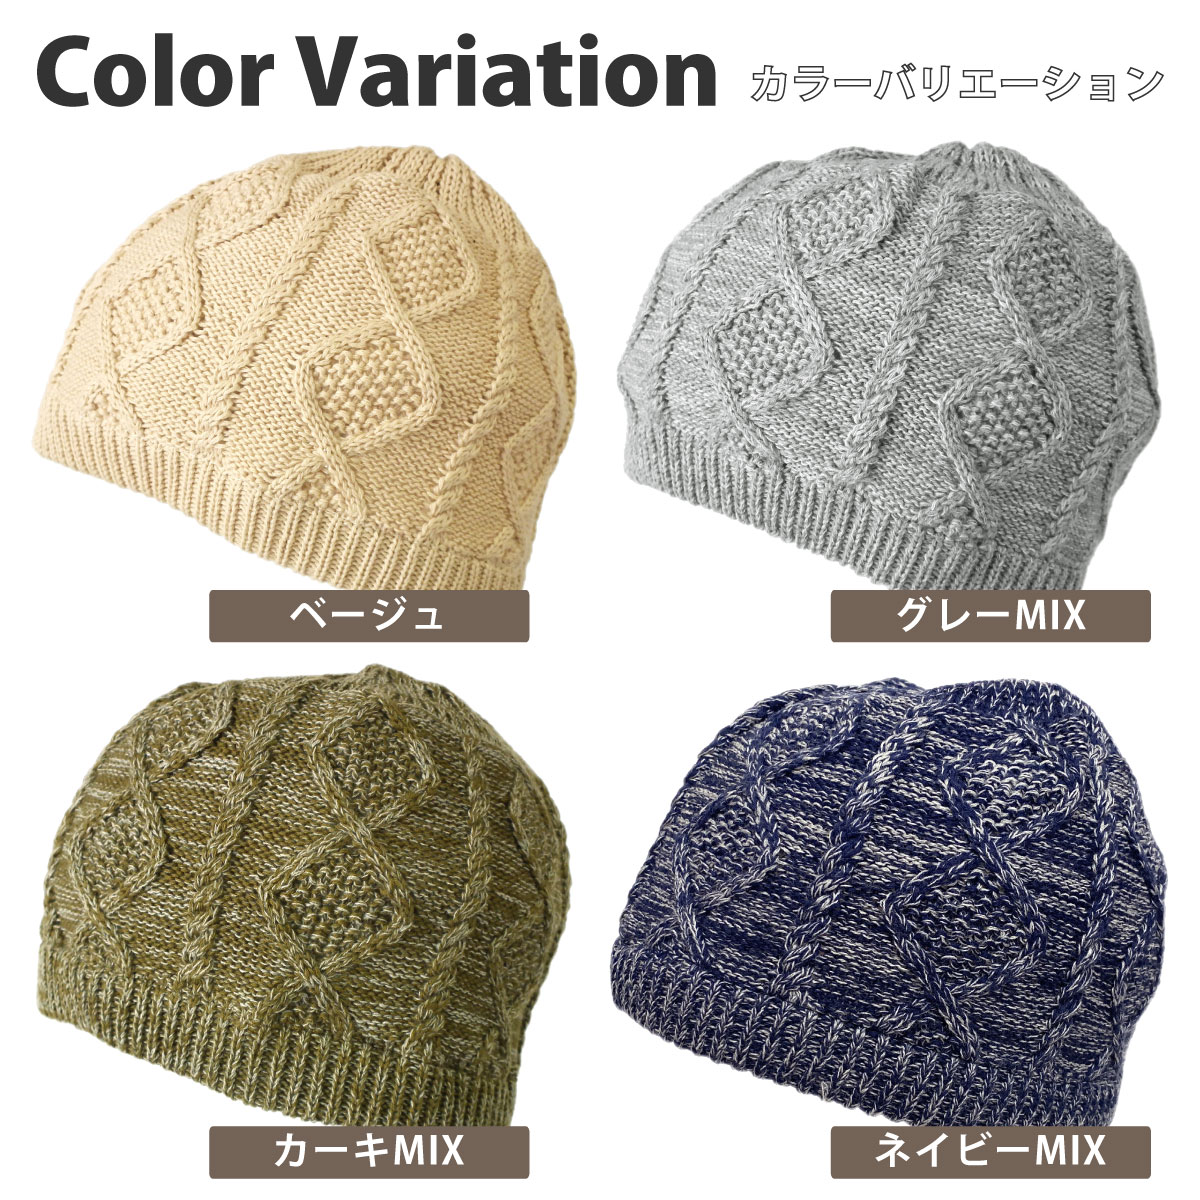 オーガニックコットン ニット帽 浅い 綿100% ショートワッチ 医療用帽子 メンズ レディース knit-1657